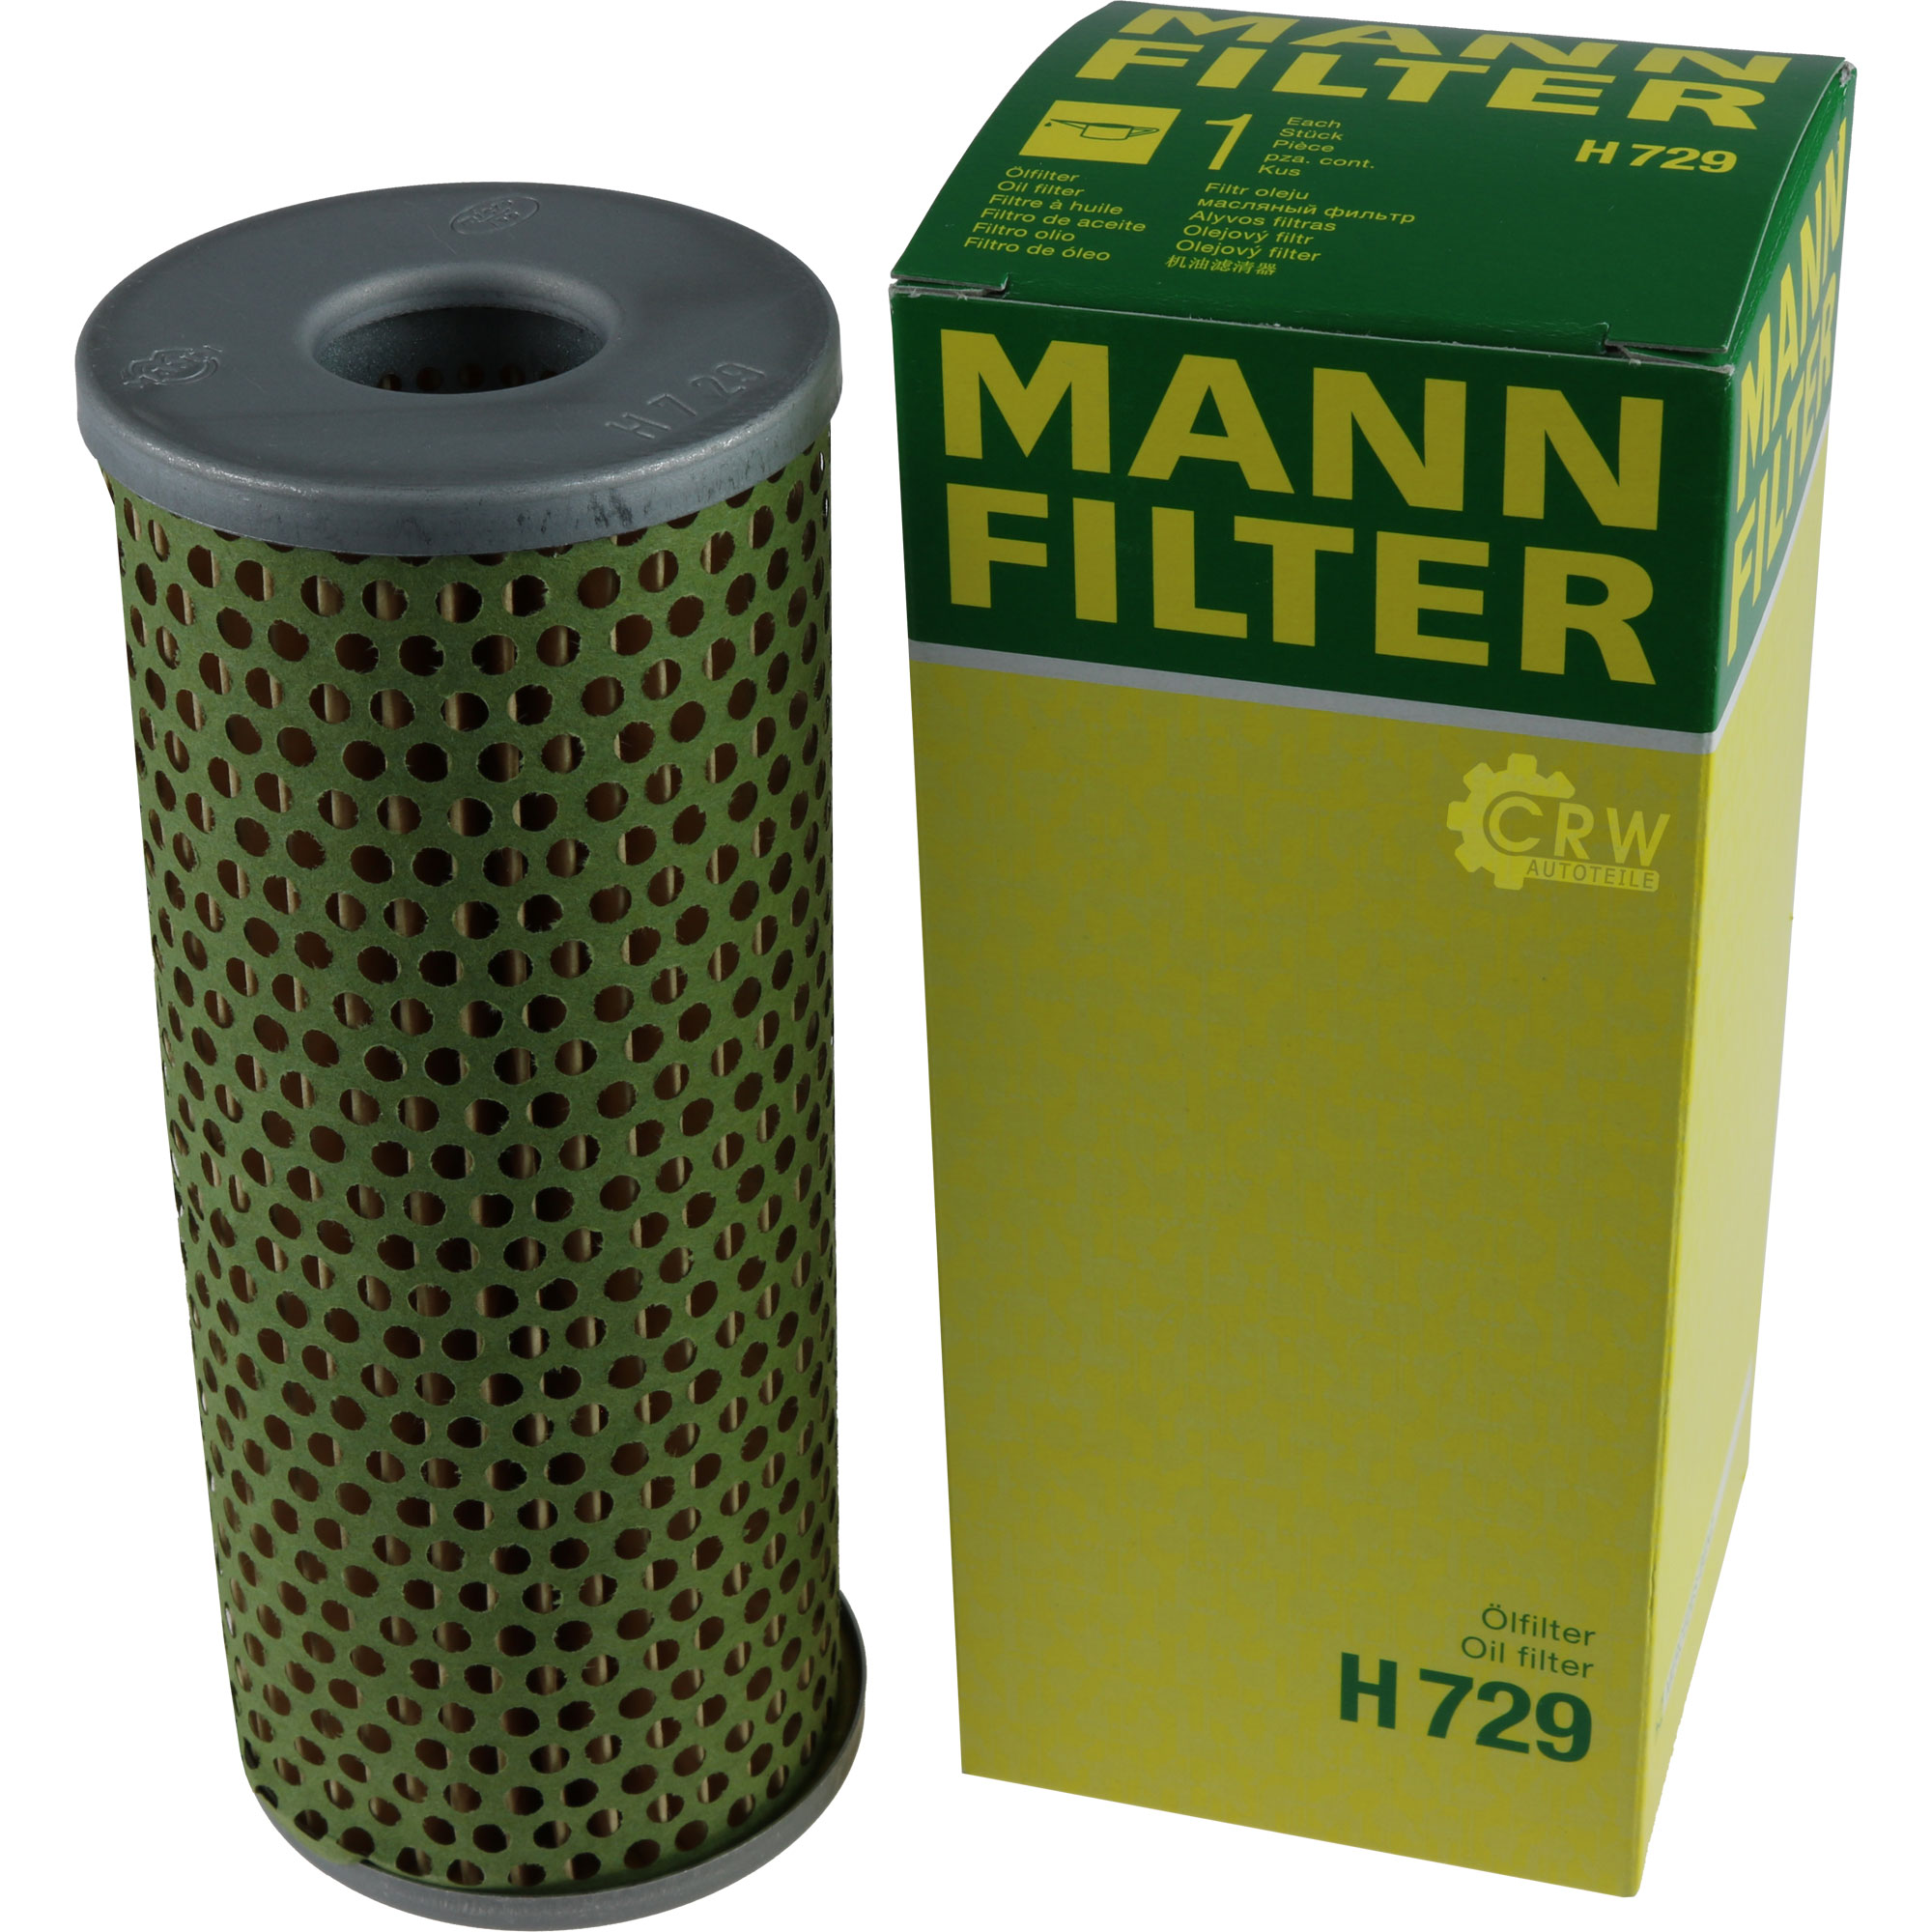 MANN-FILTER ÖlFILTER für Arbeitshydraulik H 729